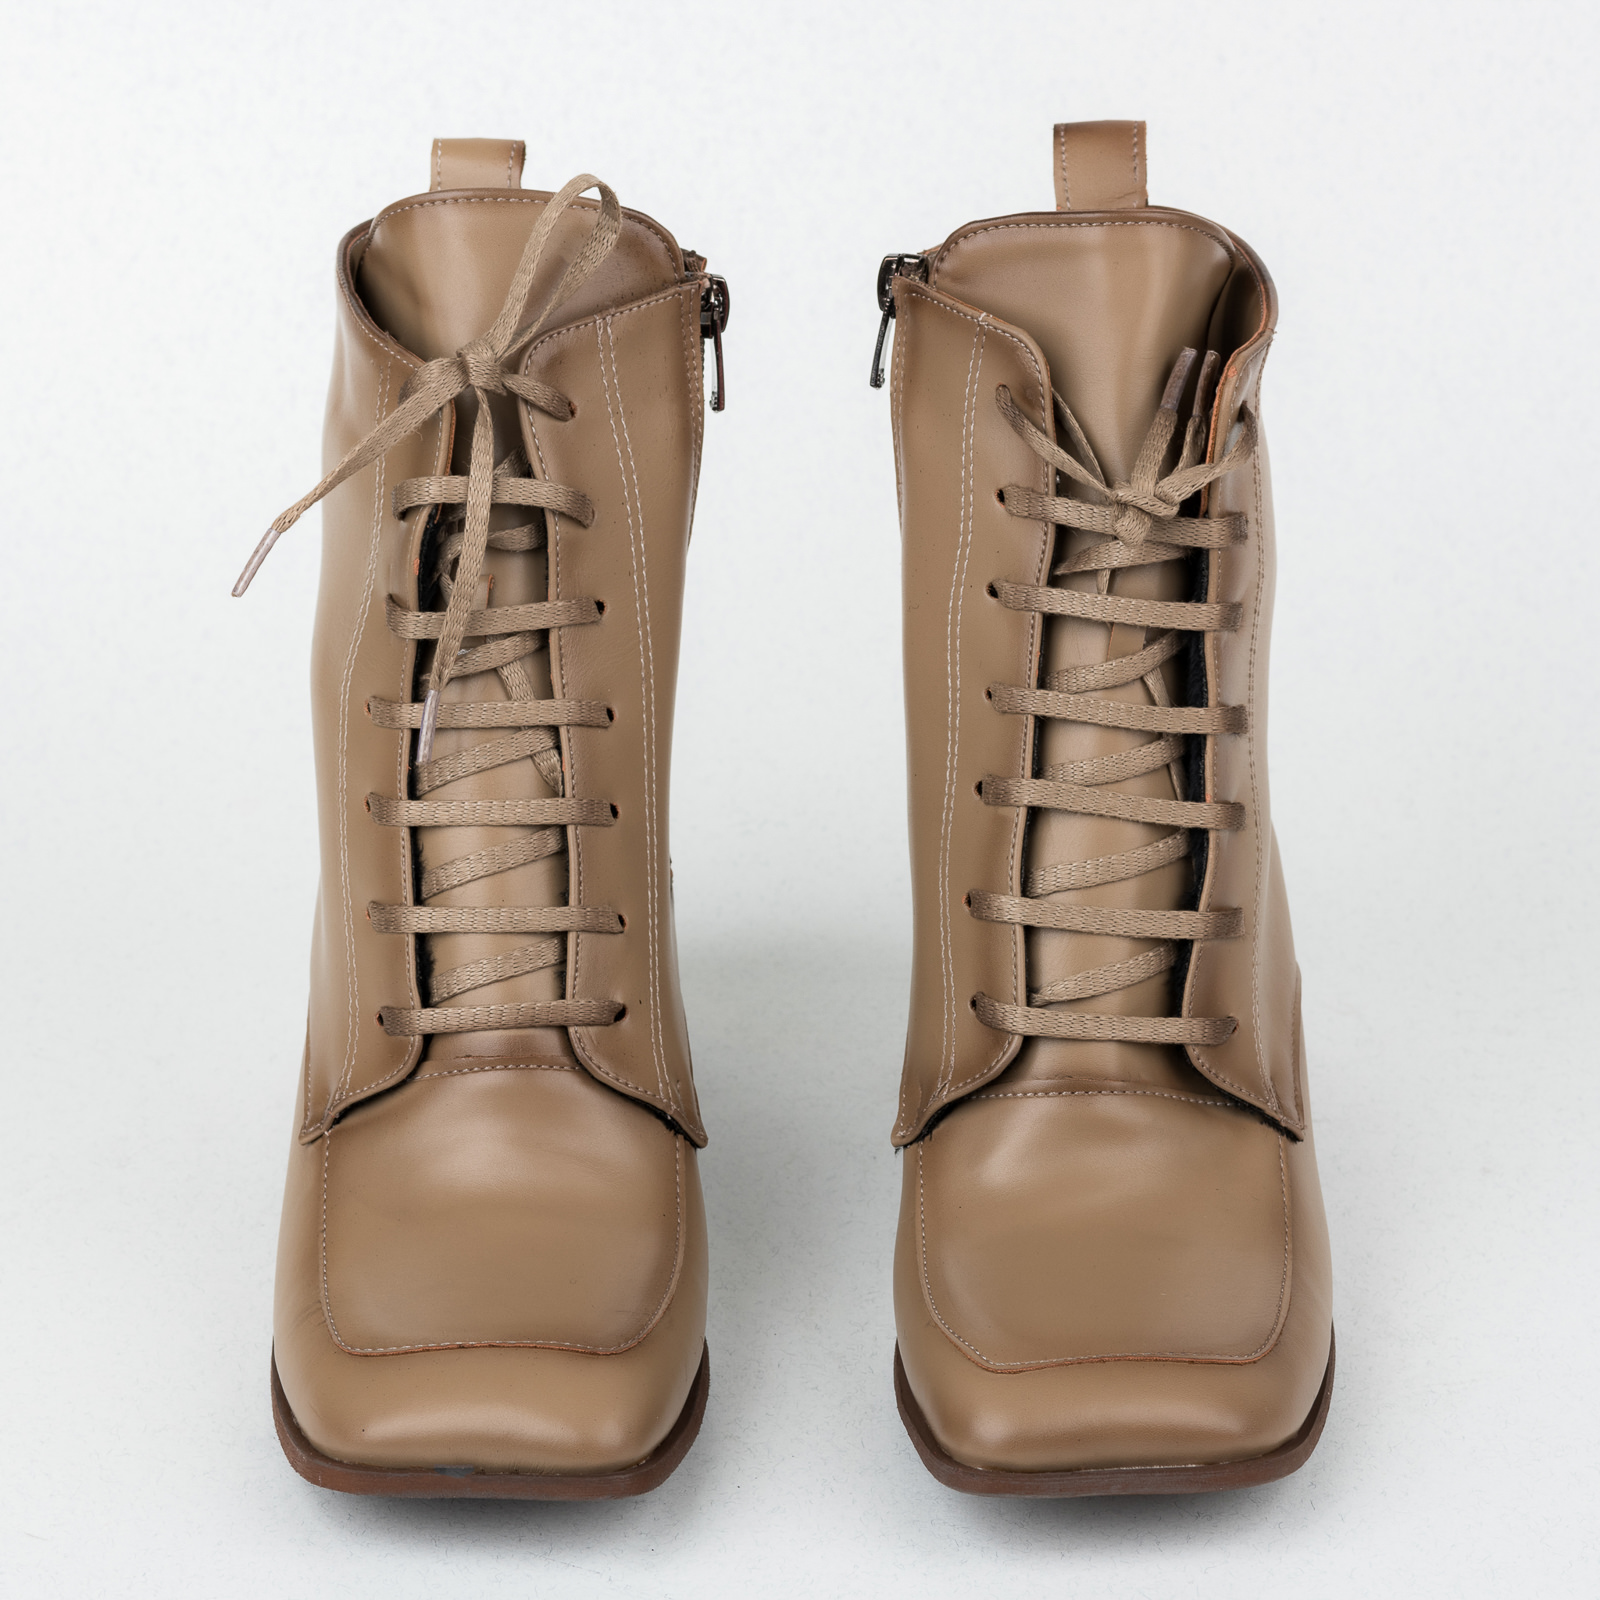 Women ankle boots B495 - BEIGE